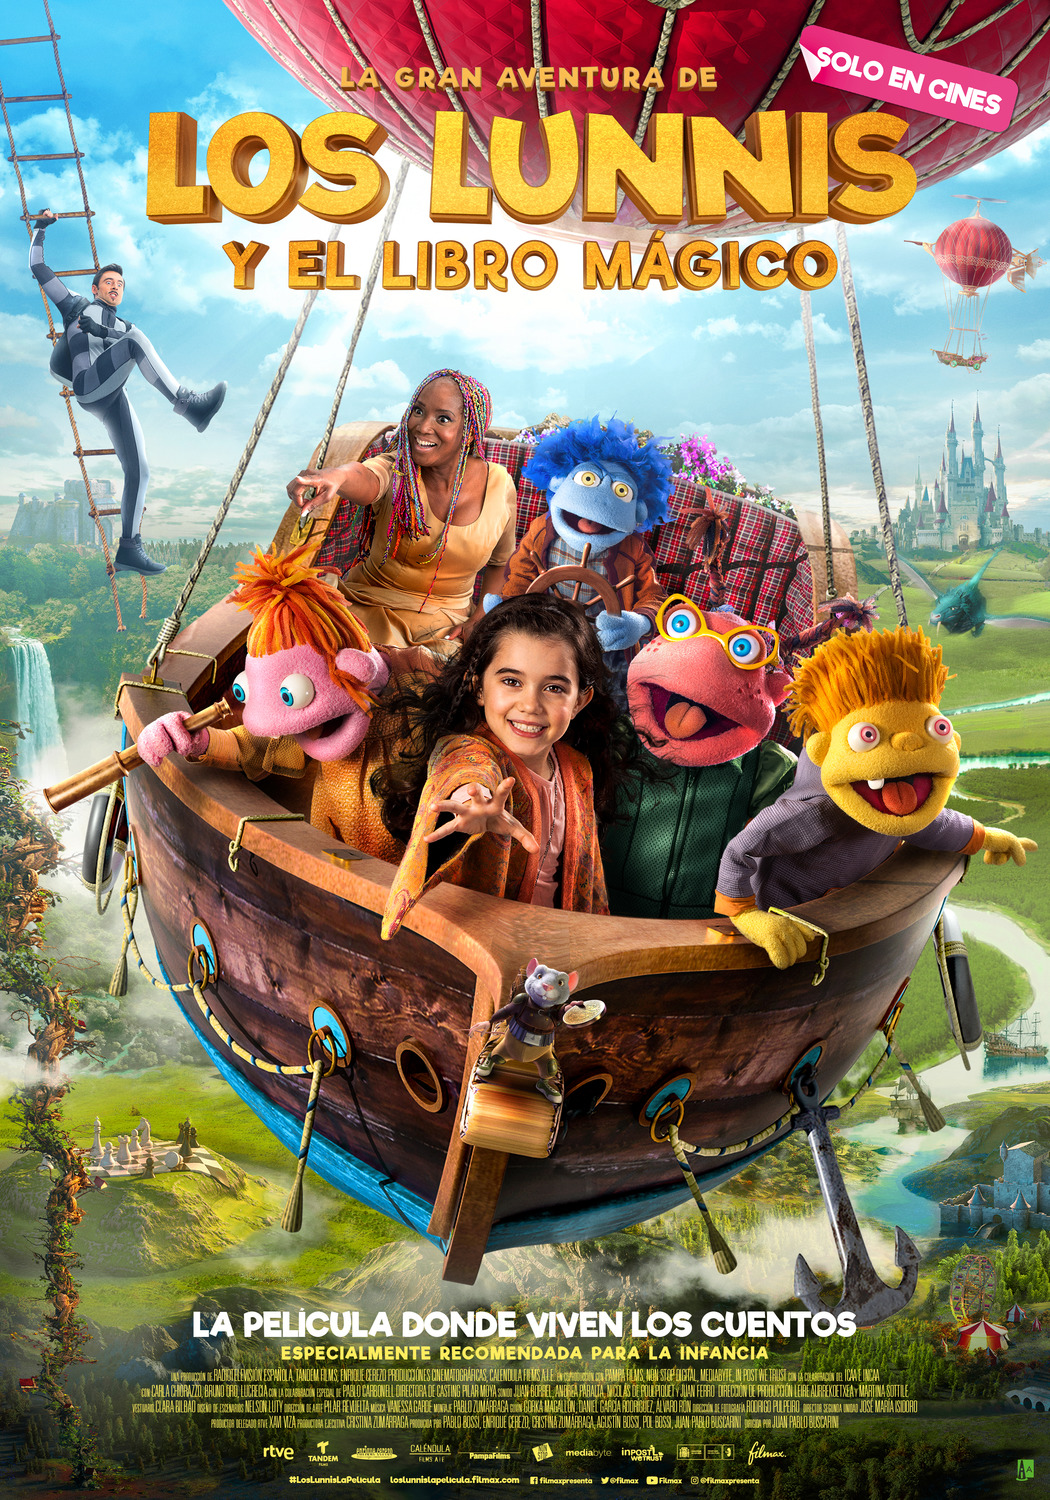 Extra Large Movie Poster Image for La gran aventura de los Lunnis y el libro mágico 